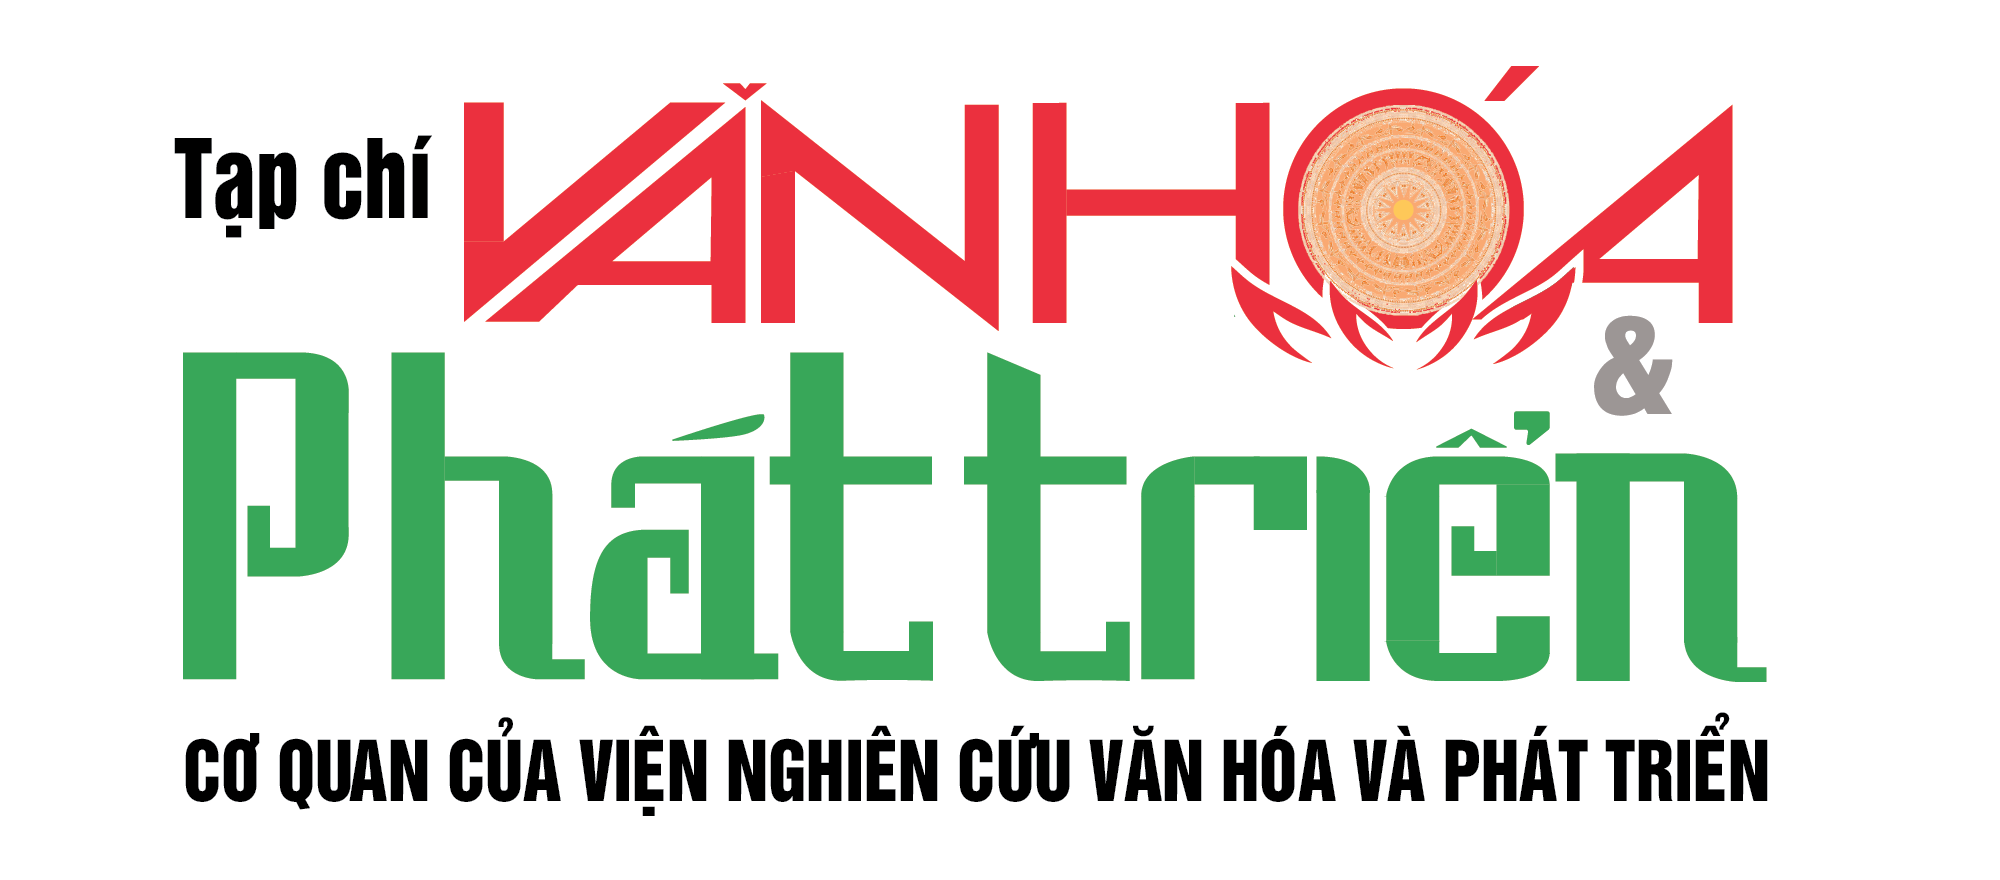 logo-van-hoa-phat-trien-1620826884.png